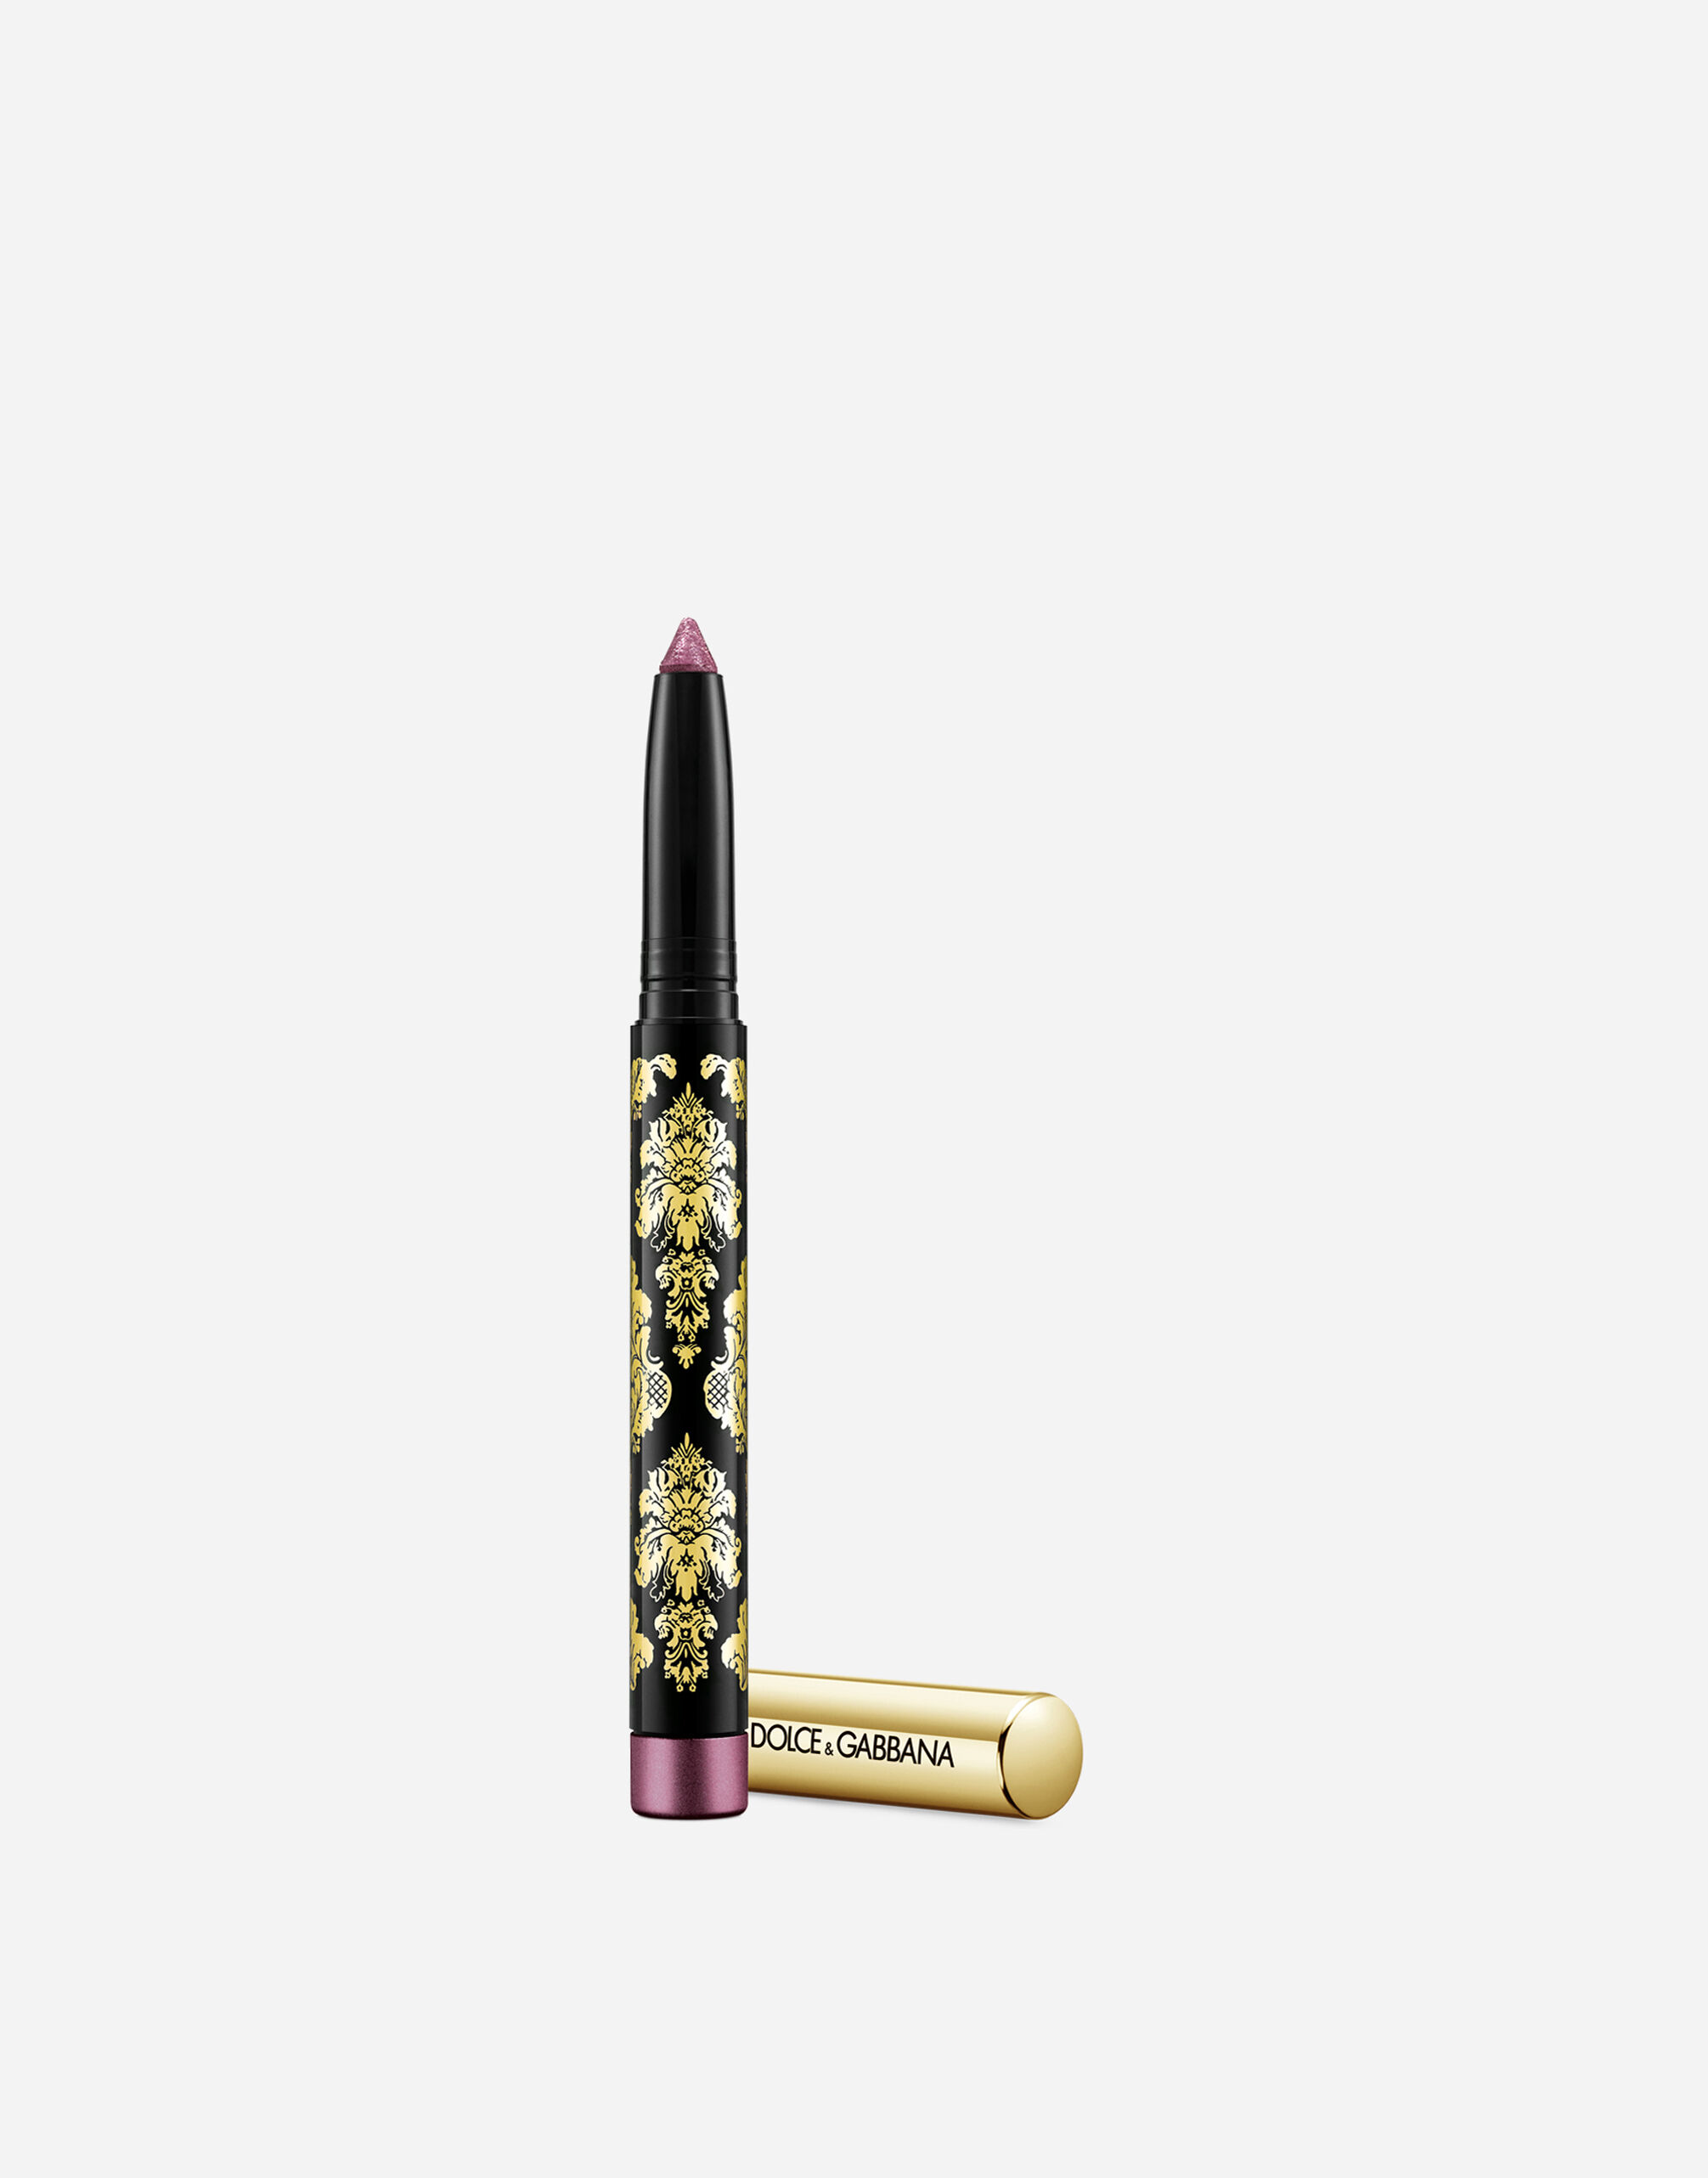 Тени-карандаш для глаз Dolce & Gabbana Intenseyes кремовые, №9 Dahlia, 1,4 г карандаш кайал для глаз dolce